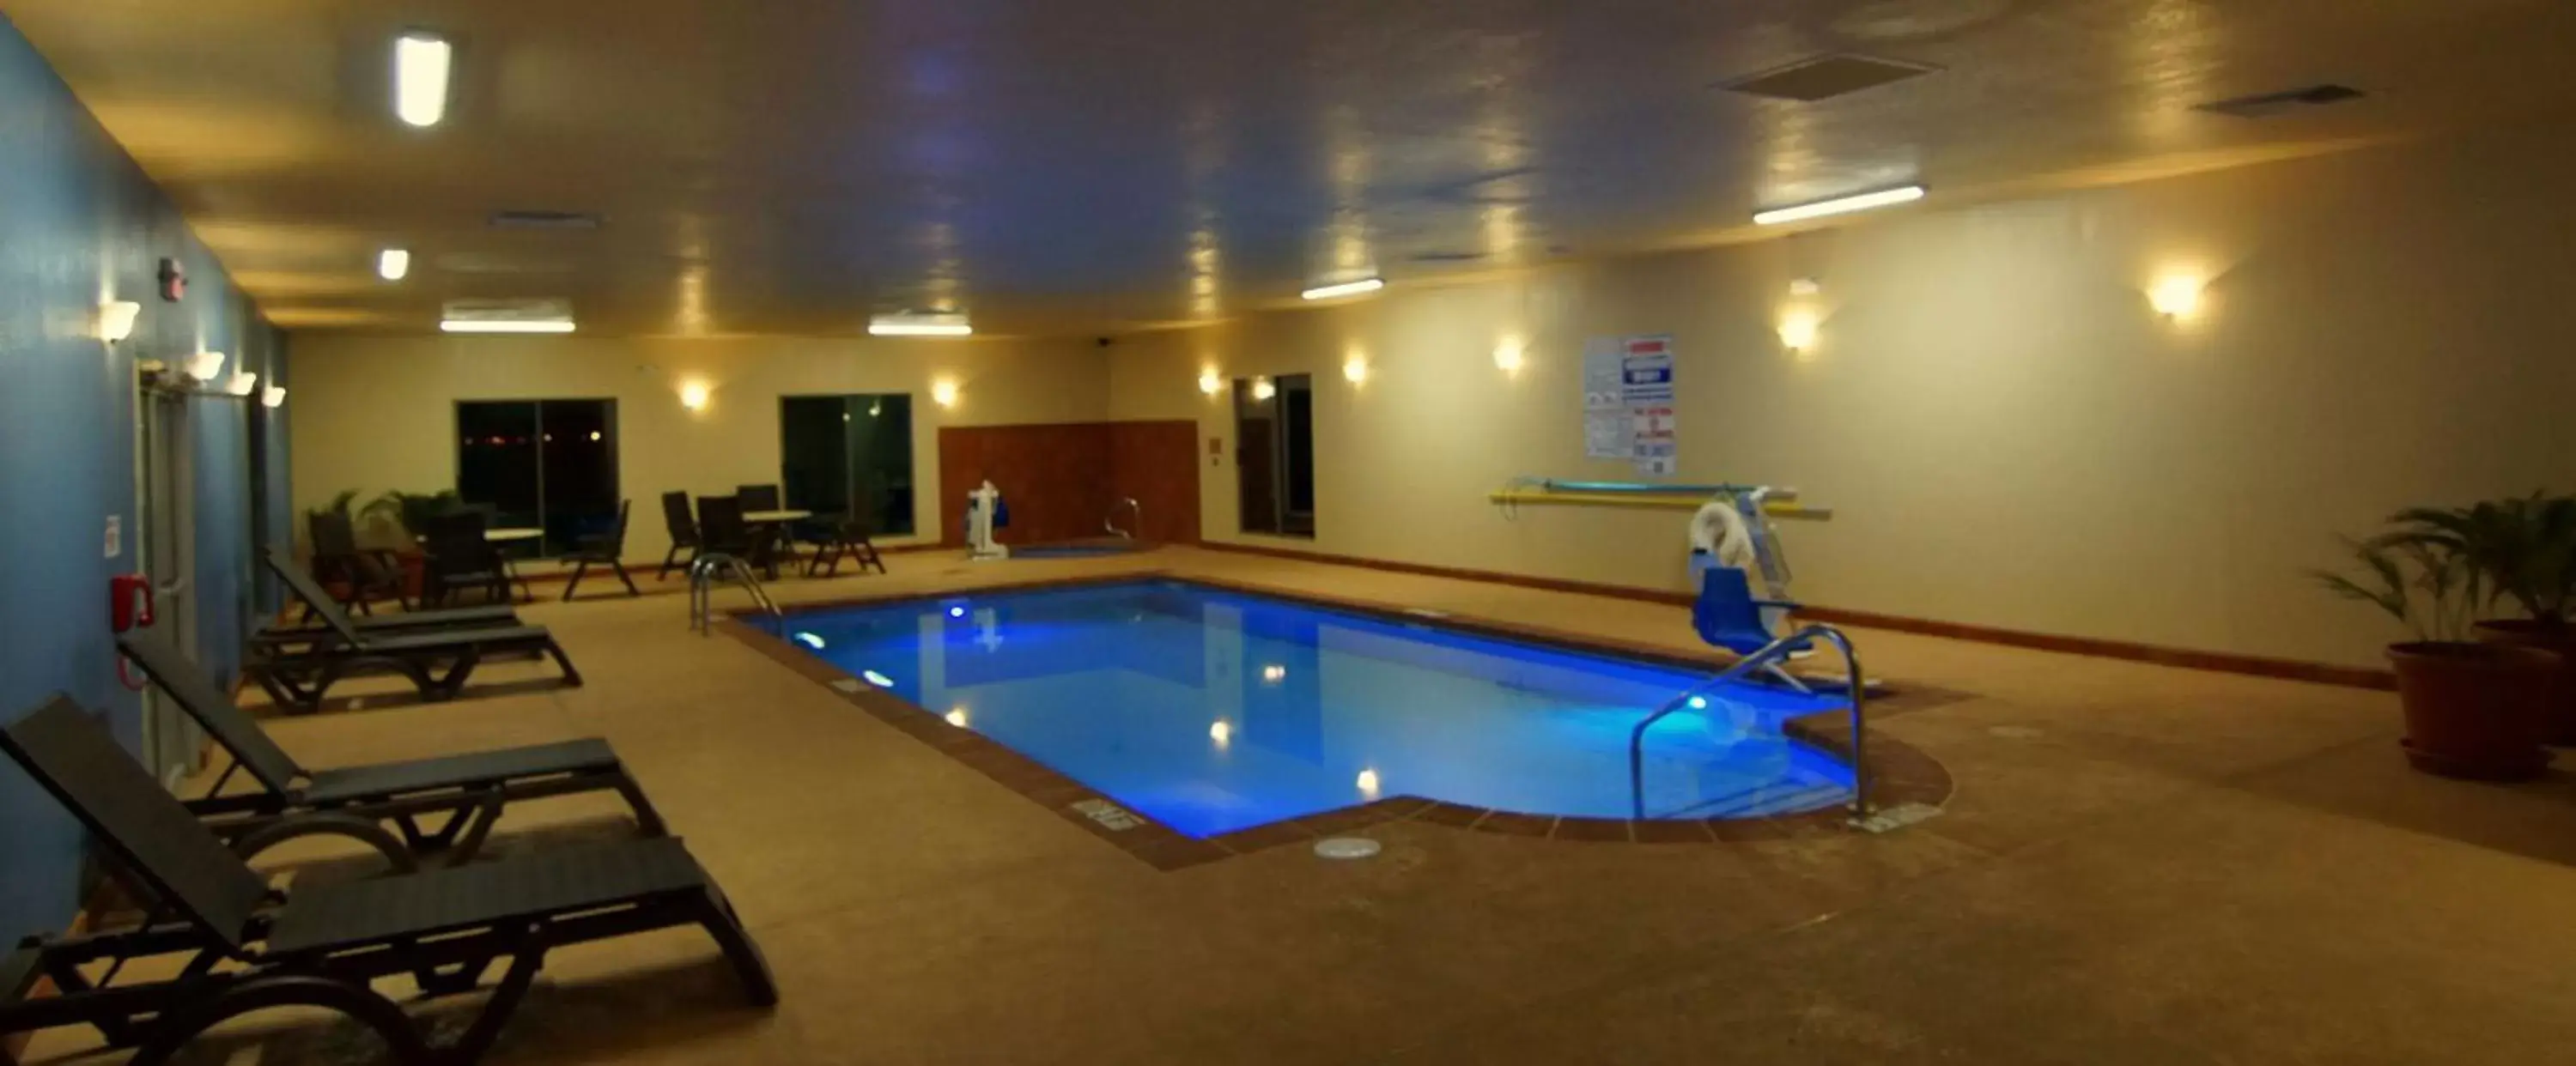 On site, Swimming Pool in Best Western East El Paso Inn